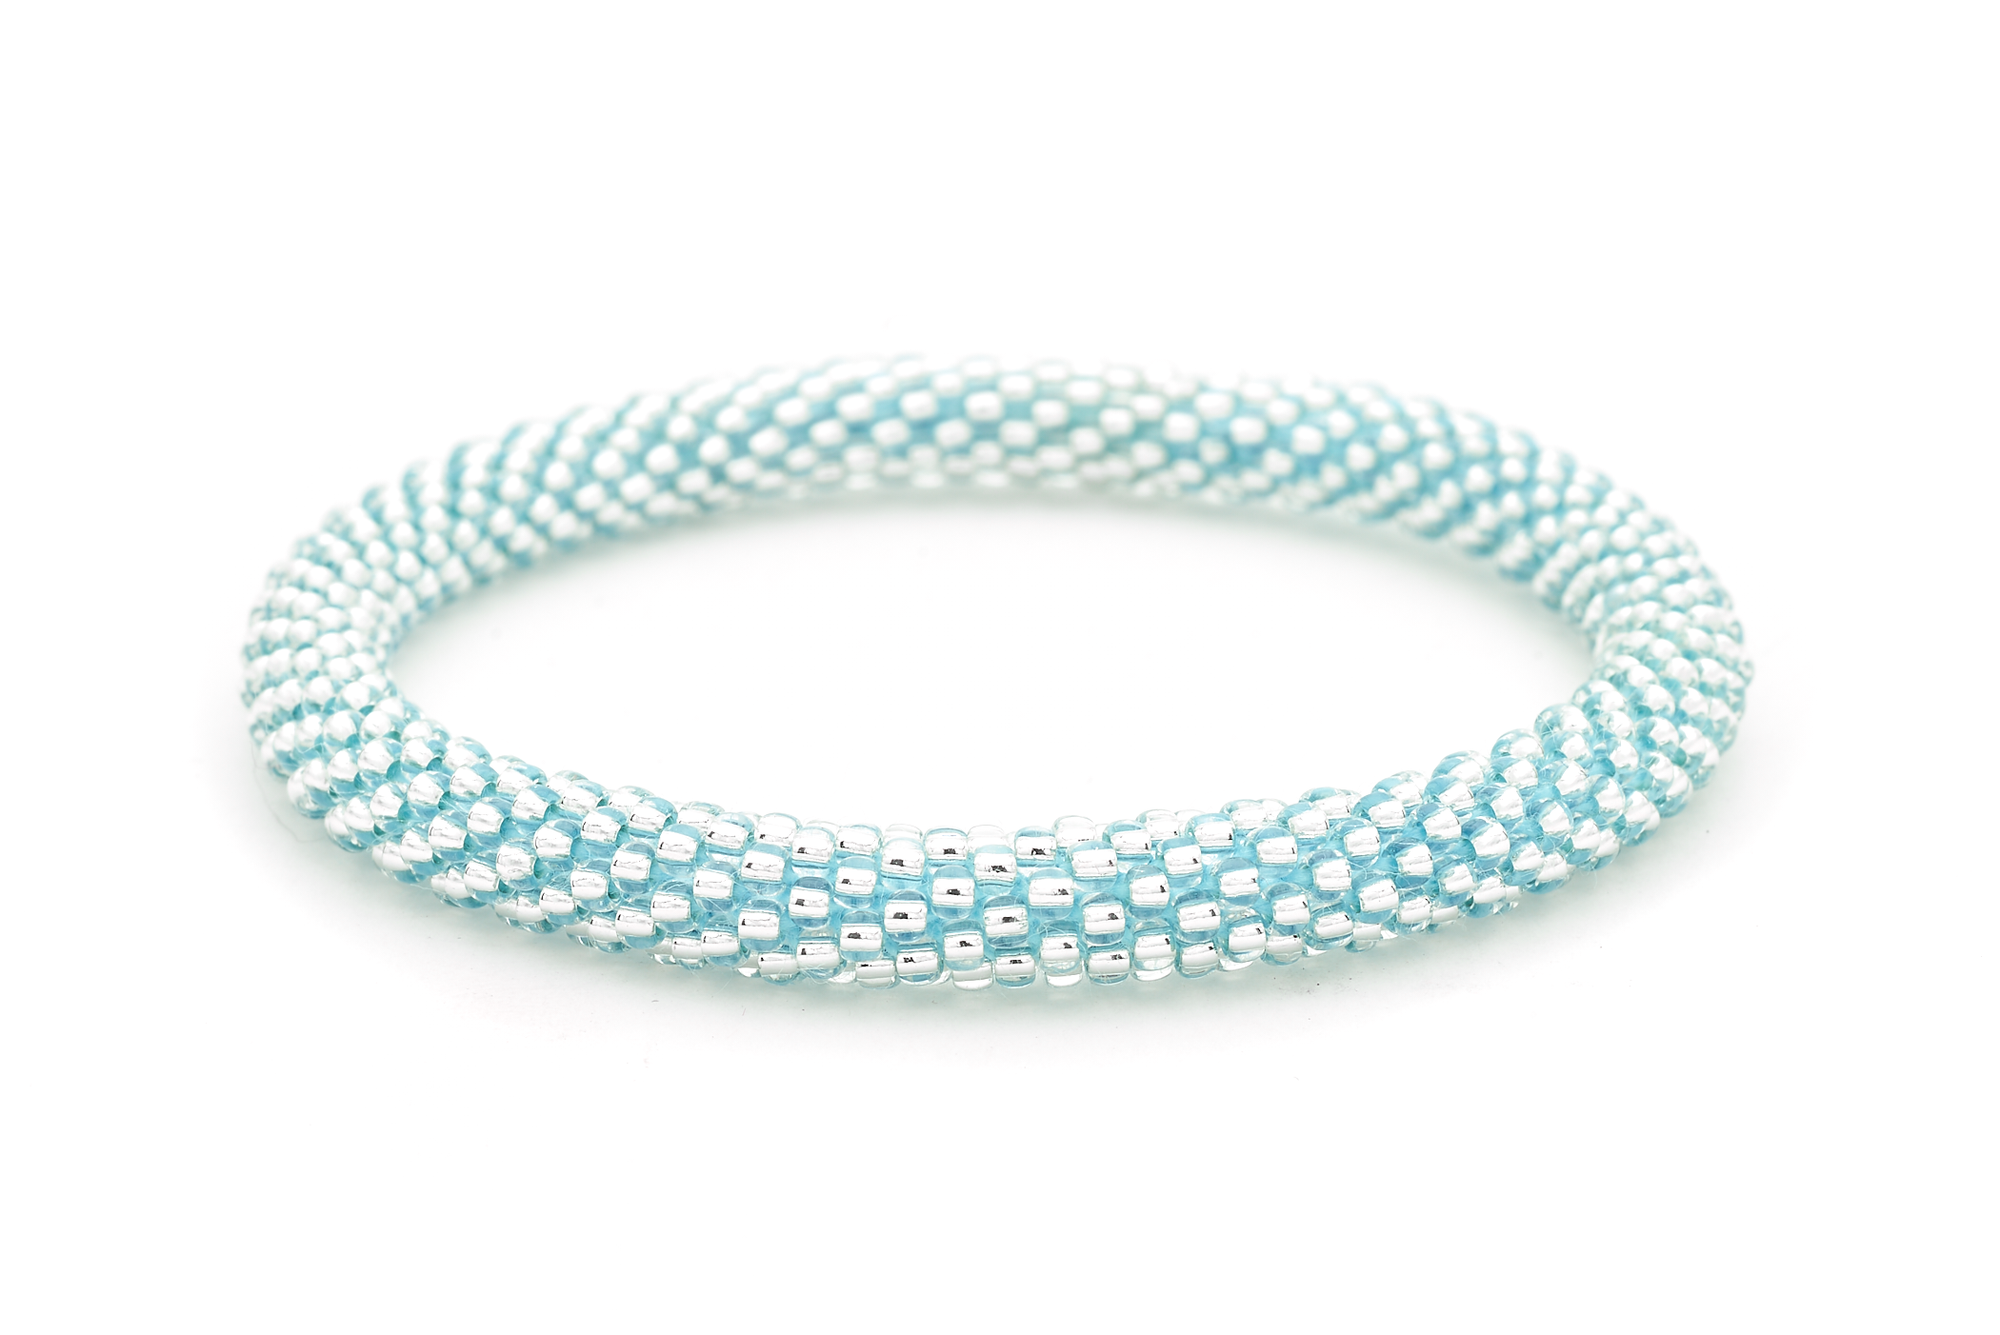 Sashka Co. Extended 8" Bracelet Clear Bead with Blue Thread Blue Diamond Sparkle - Extended 8"